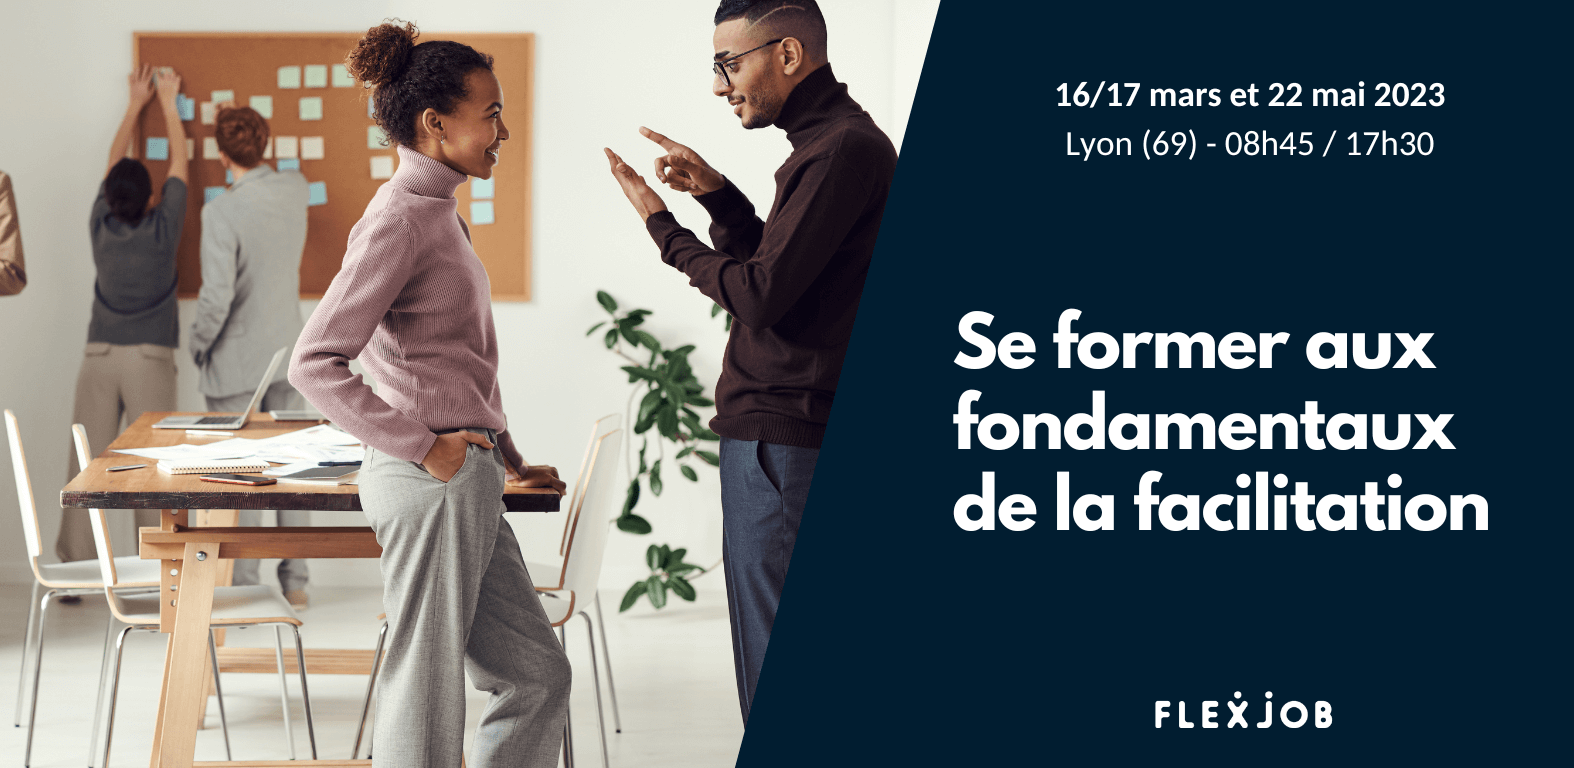 Venez vous former à la facilitation avec FlexJob à Lyon !